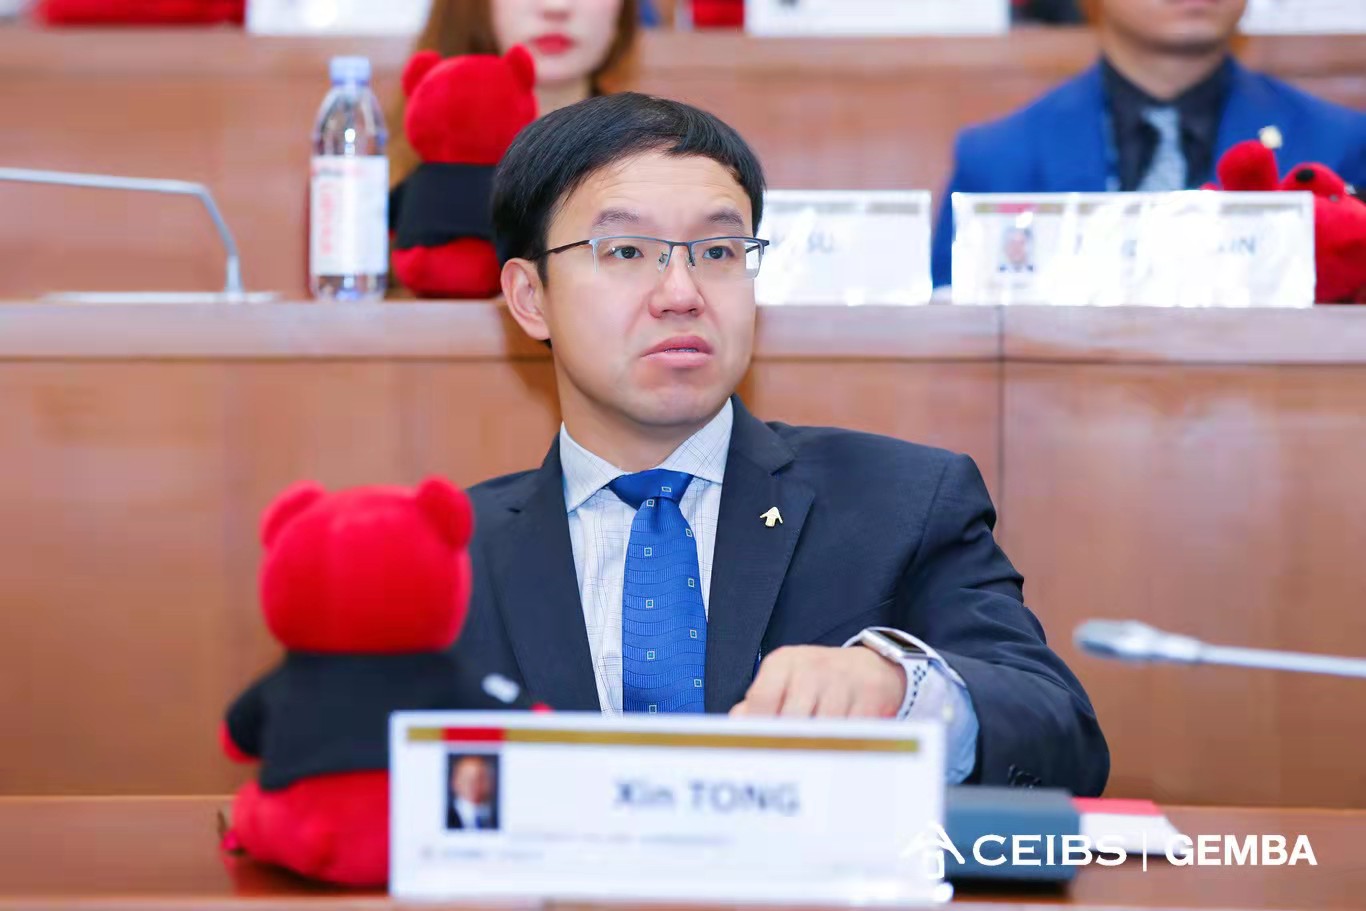 Xin Tong, Global EMBA 2020